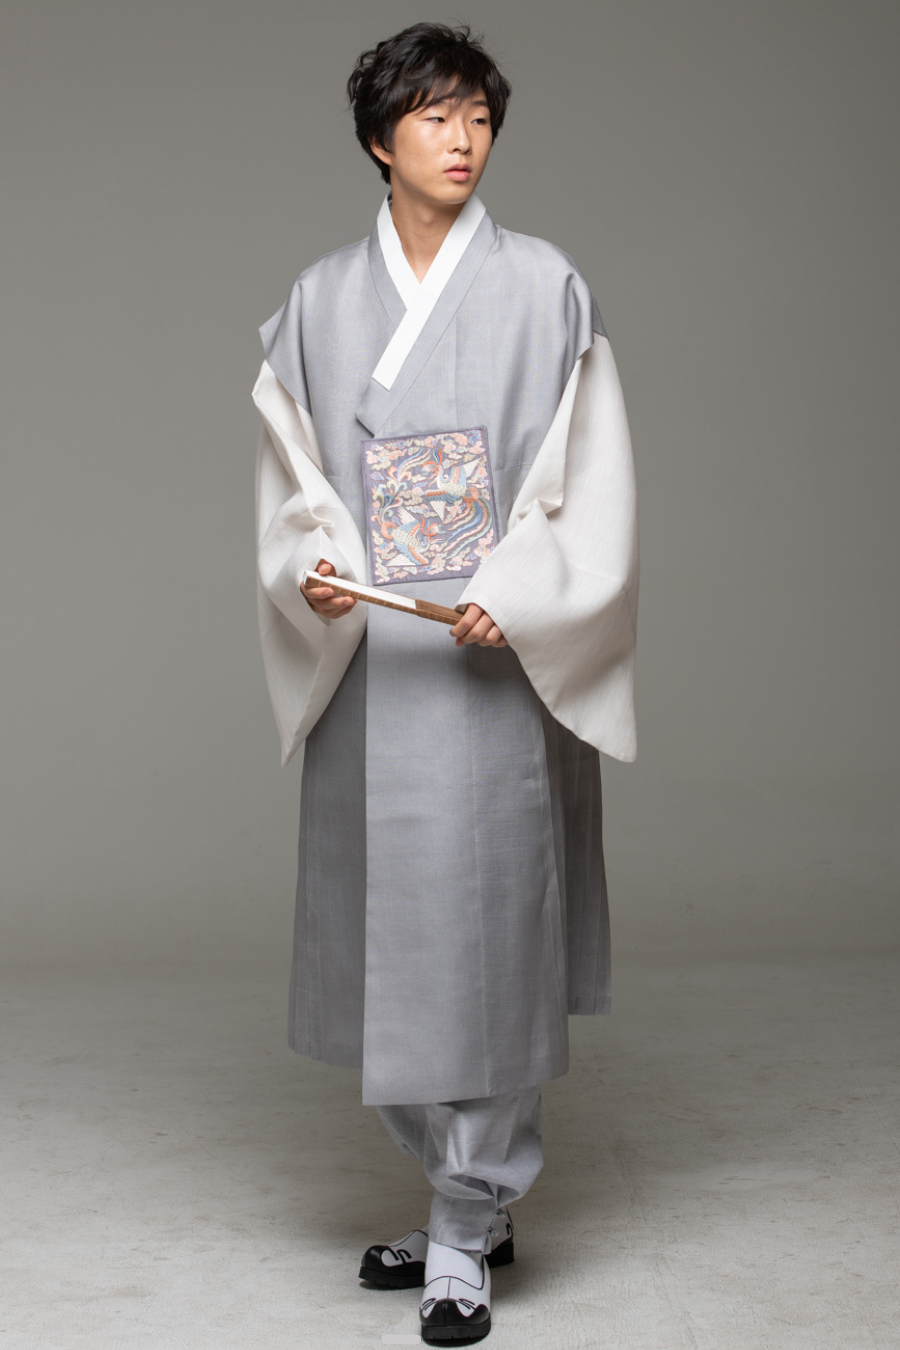 Discover 179+ japanese dress for men best